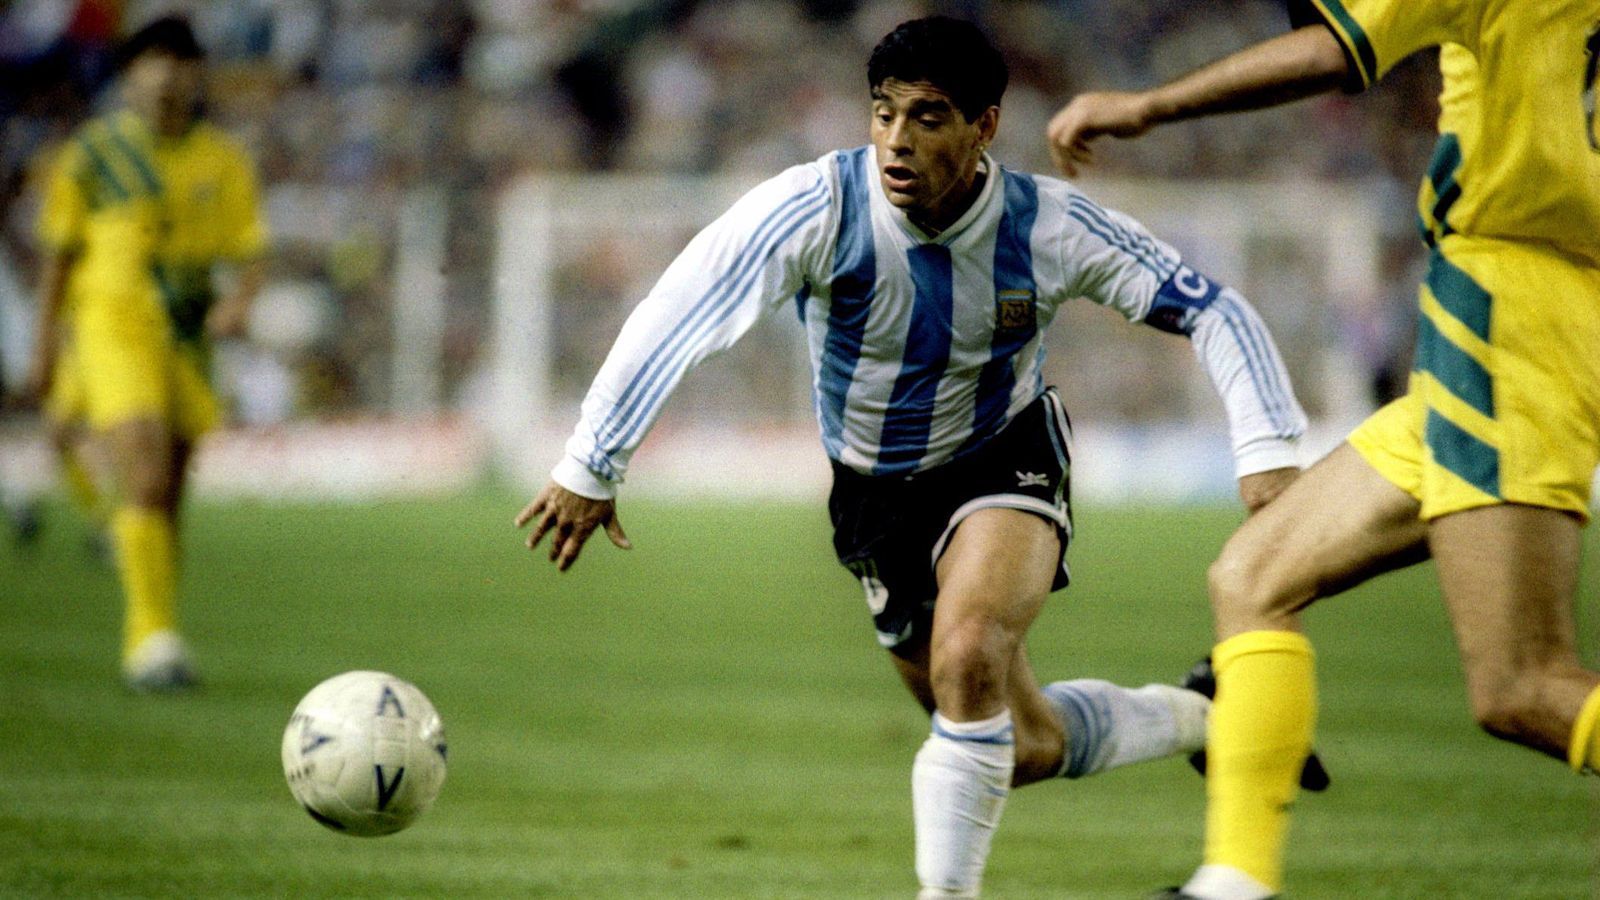 
                <strong>Diego Armando Maradona </strong><br>
                Jeder kennt seinen Namen, in Argentinien wird er teilweise sogar als Gott verehrt. Den SSC Neapel führte er in den 80ern zu nie dagewesenem Ruhm und die Albiceleste machte er 1986 zum Weltmeister. Vor allem seine "Hand Gottes" ging in die Geschichte ein. 
              